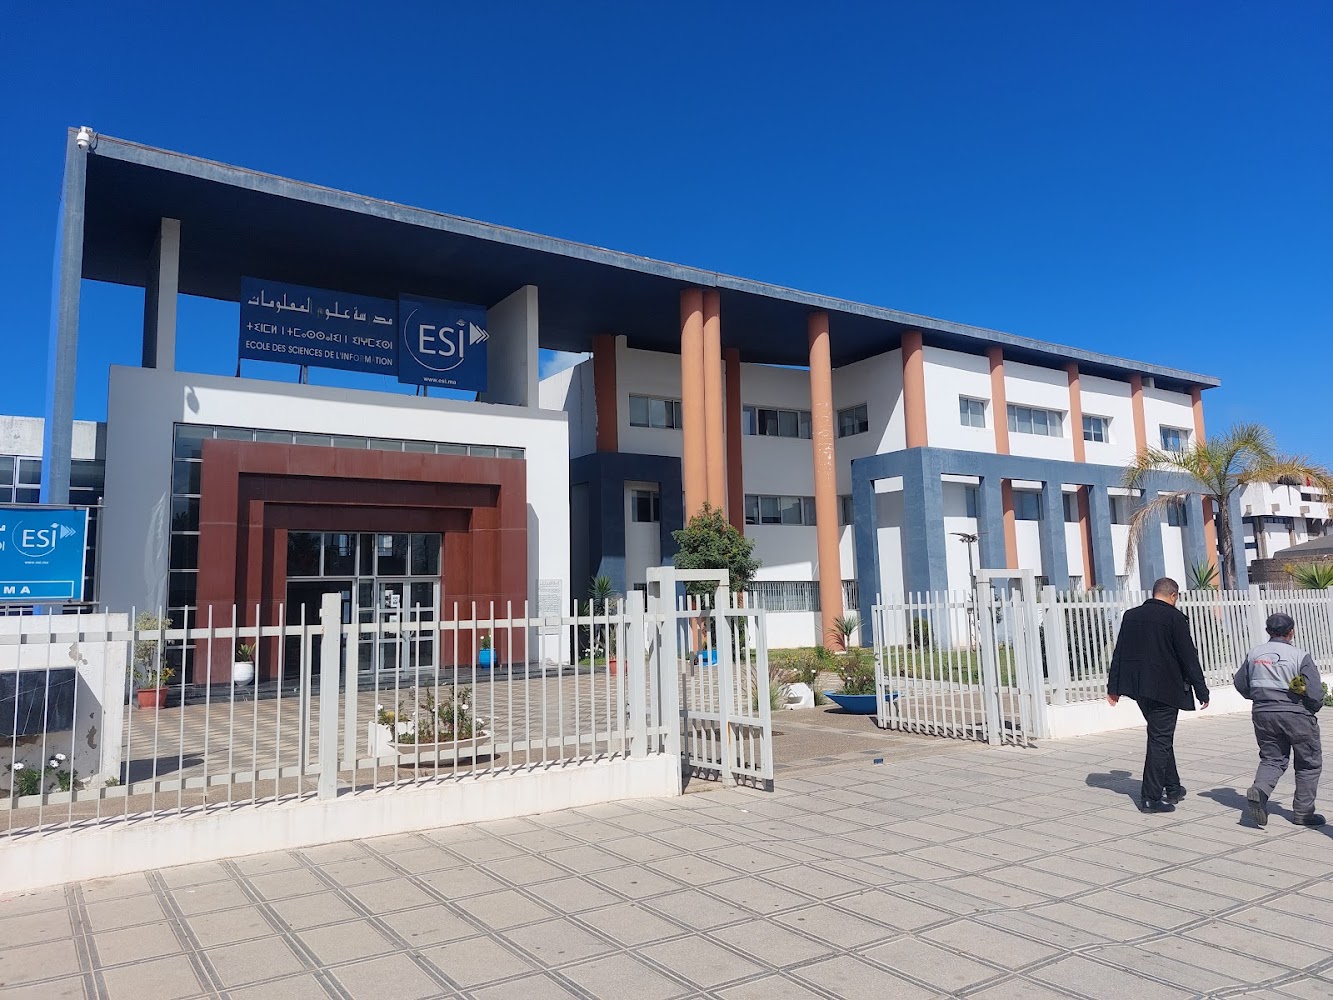 School of Information Sciences - Rabat